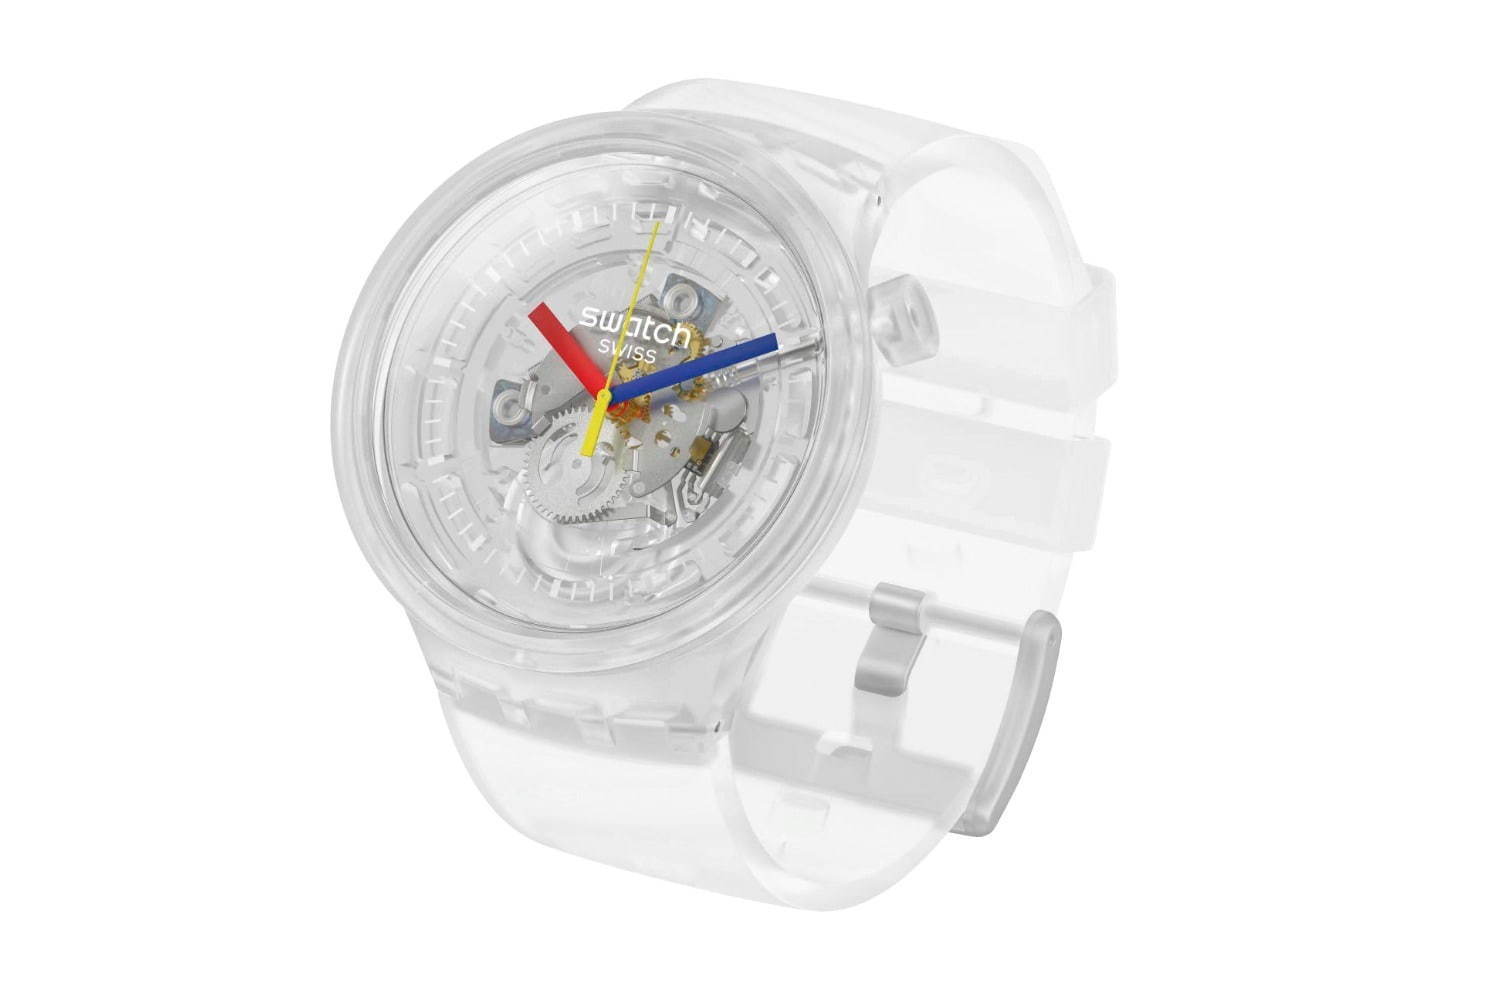 スウォッチ swatch 腕時計 メンズ腕時計 クリア スケルトン 透明